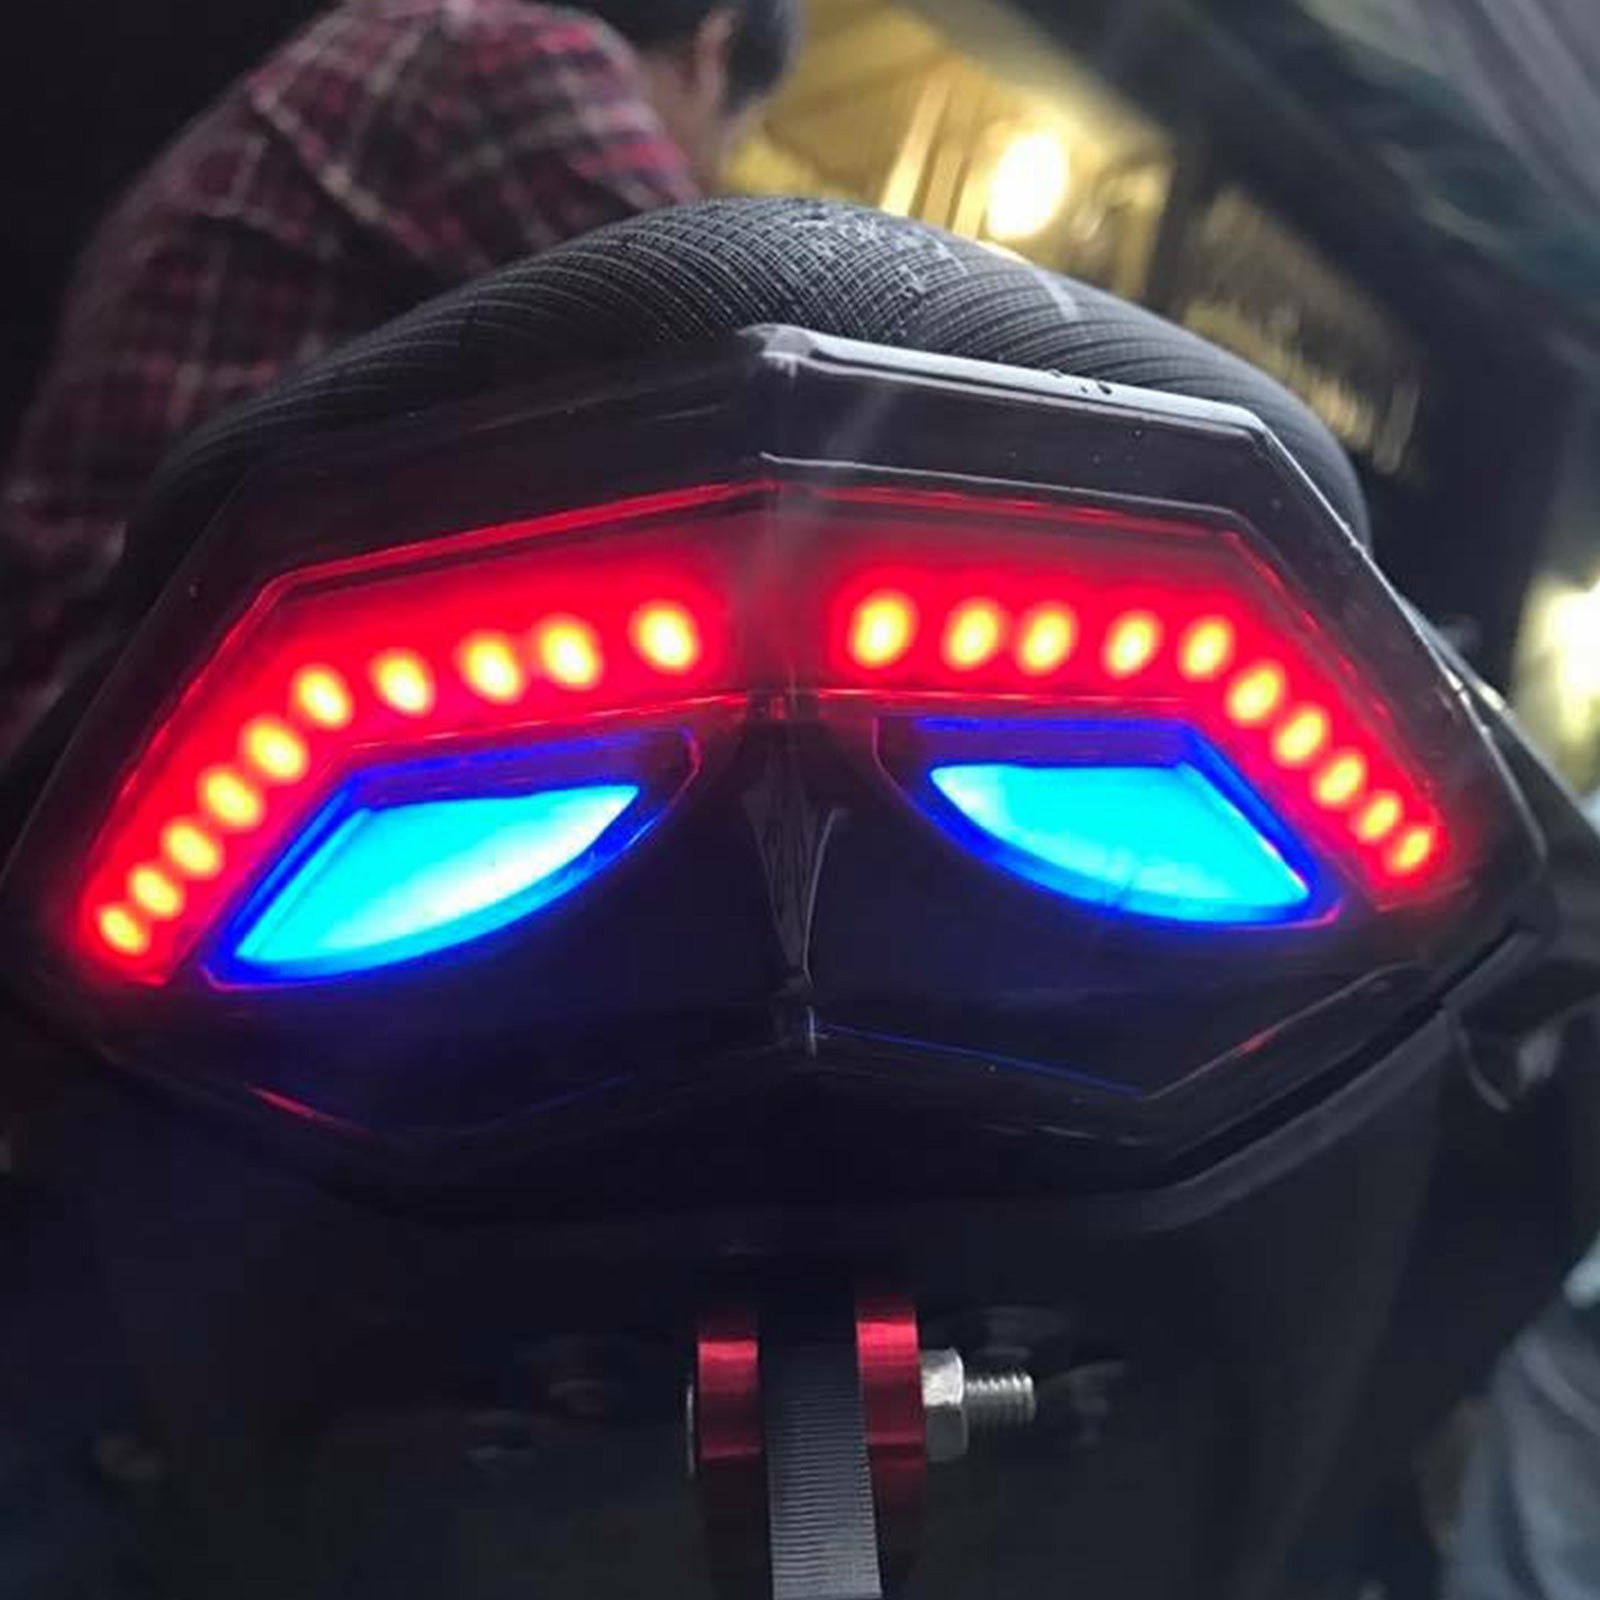 Blinker für Hinterradbremse, Rücklicht für KAWASAKI Ninja 250 300 2013–2017, Blau